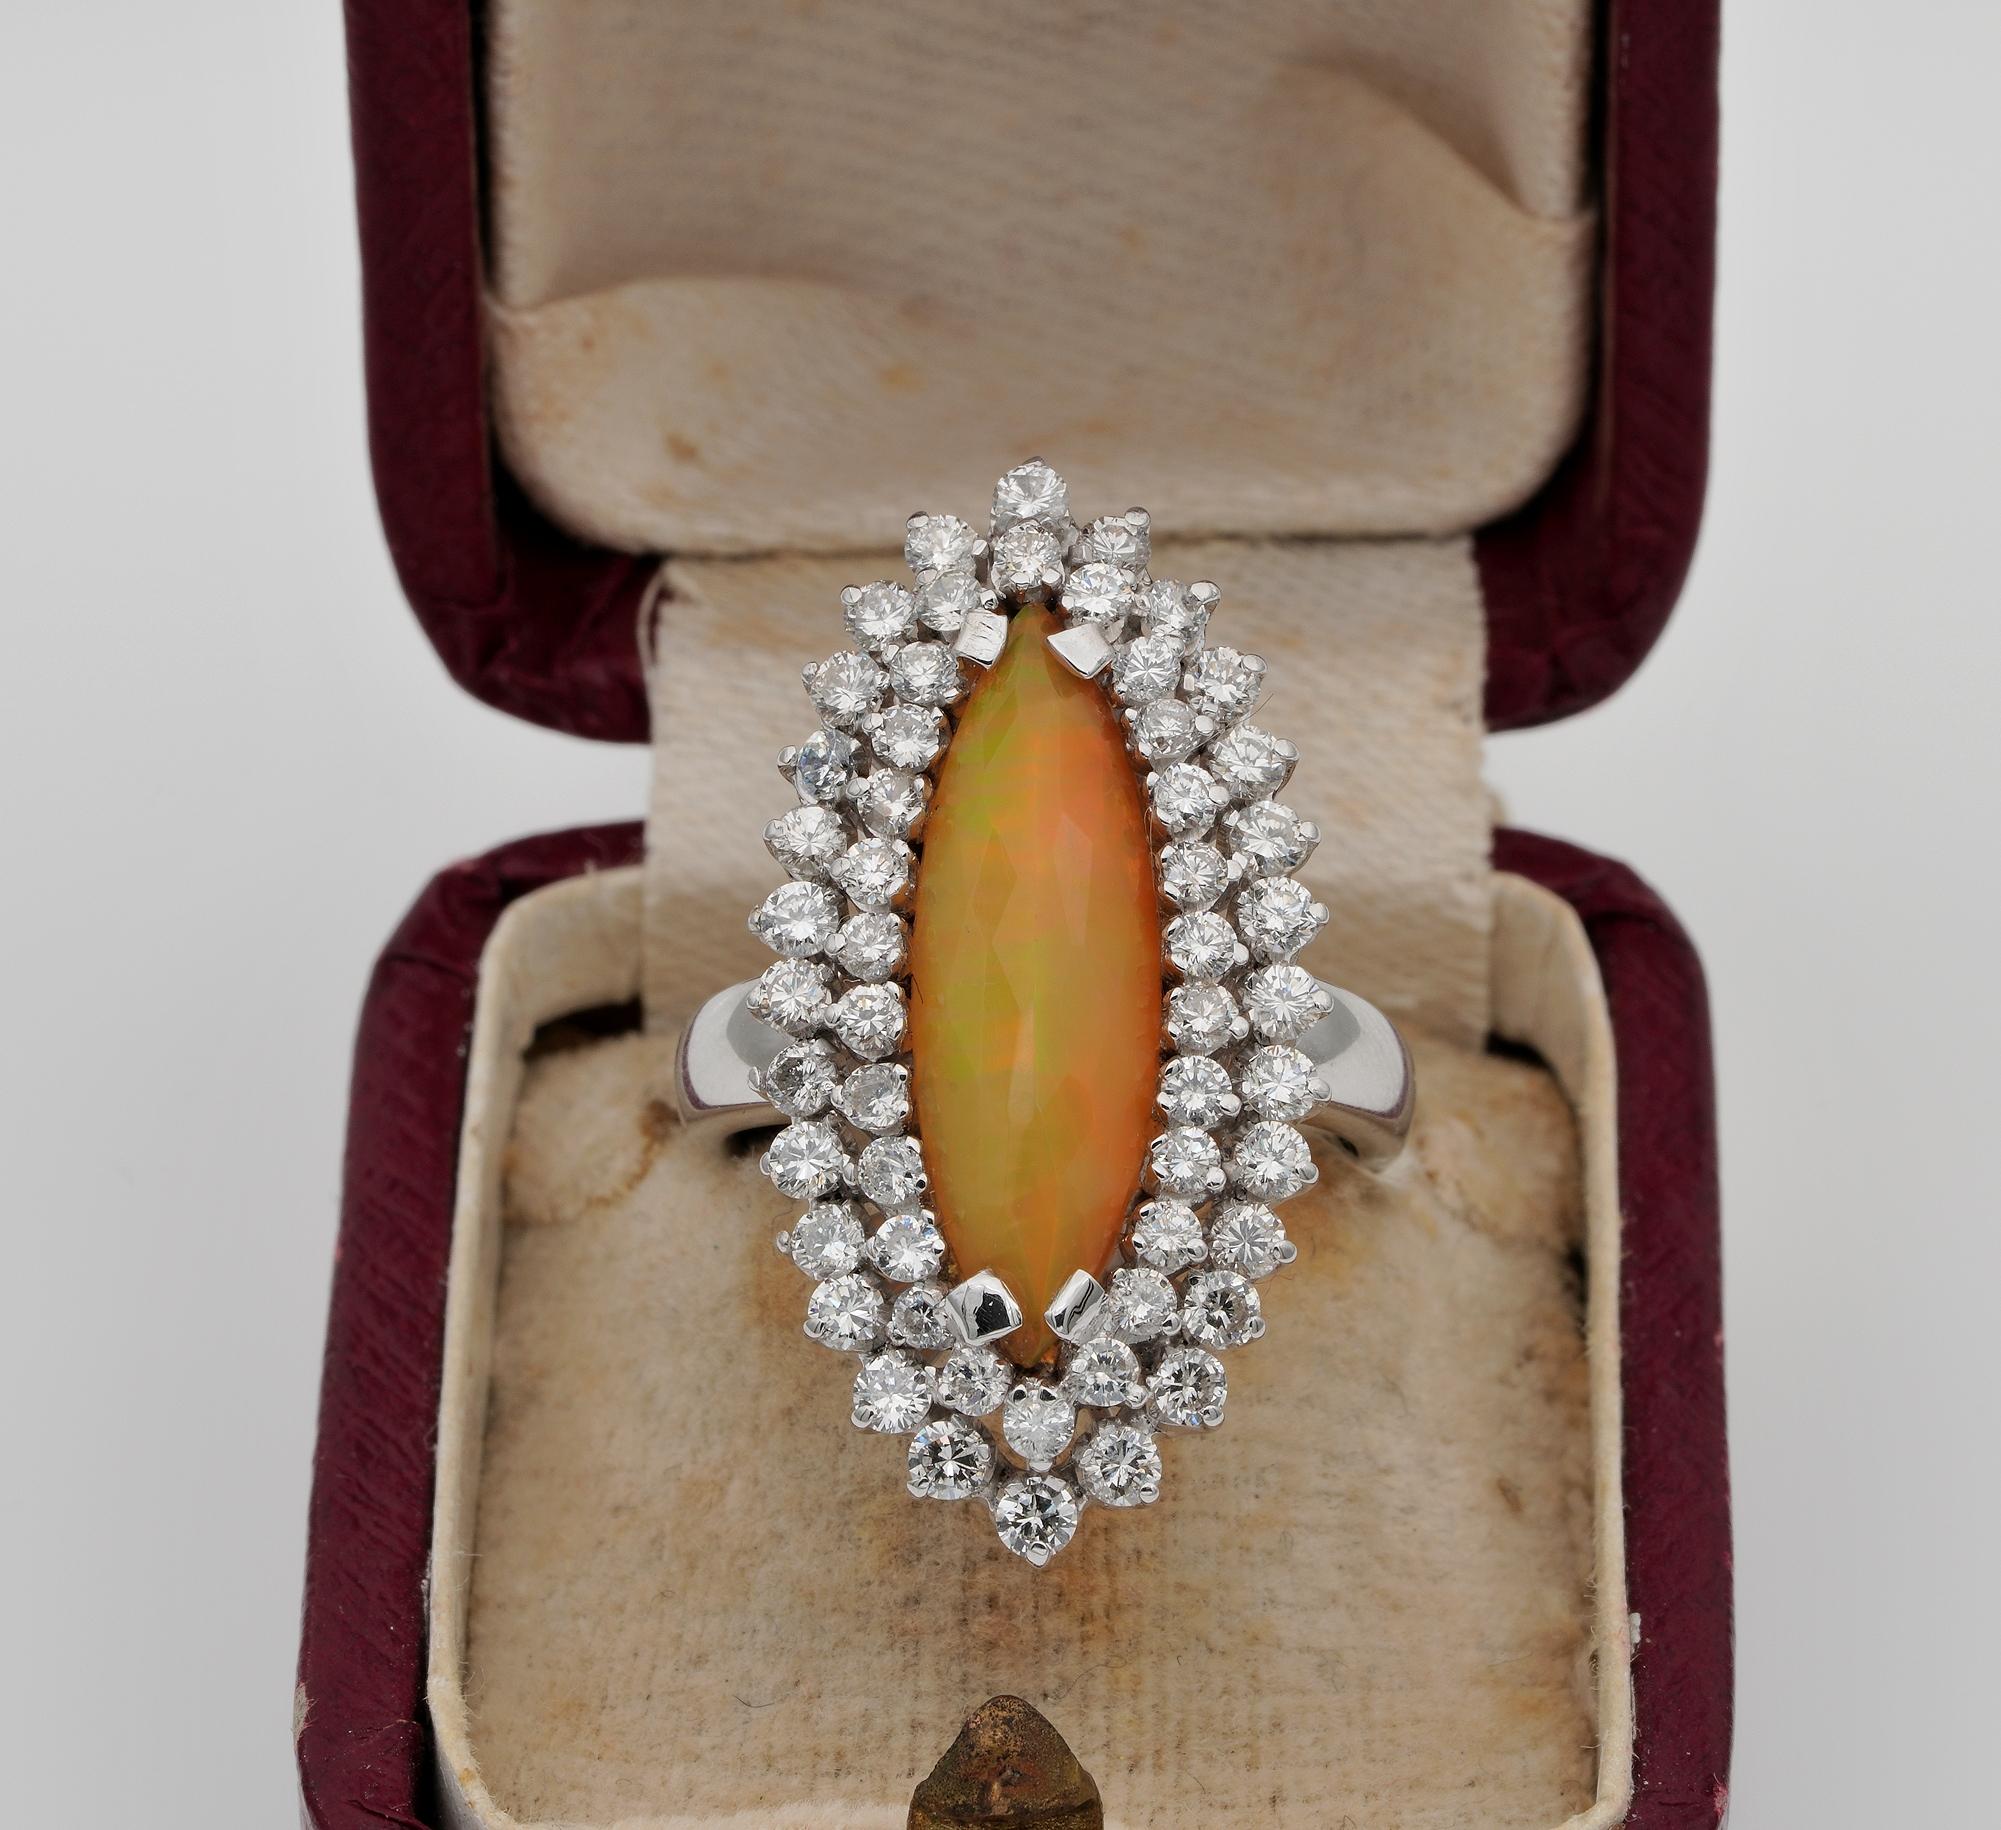 Sei einzigartig!
Prächtiger Cocktailring aus der Mitte des Jahrhunderts - ca. 1950 - Diamant und natürlicher Opal
Schicke und raffinierte Marquee-Form
Handgefertigt aus massivem 18 KT Weißgold als individuelles Schmuckstück, d.h. kein anderes wie